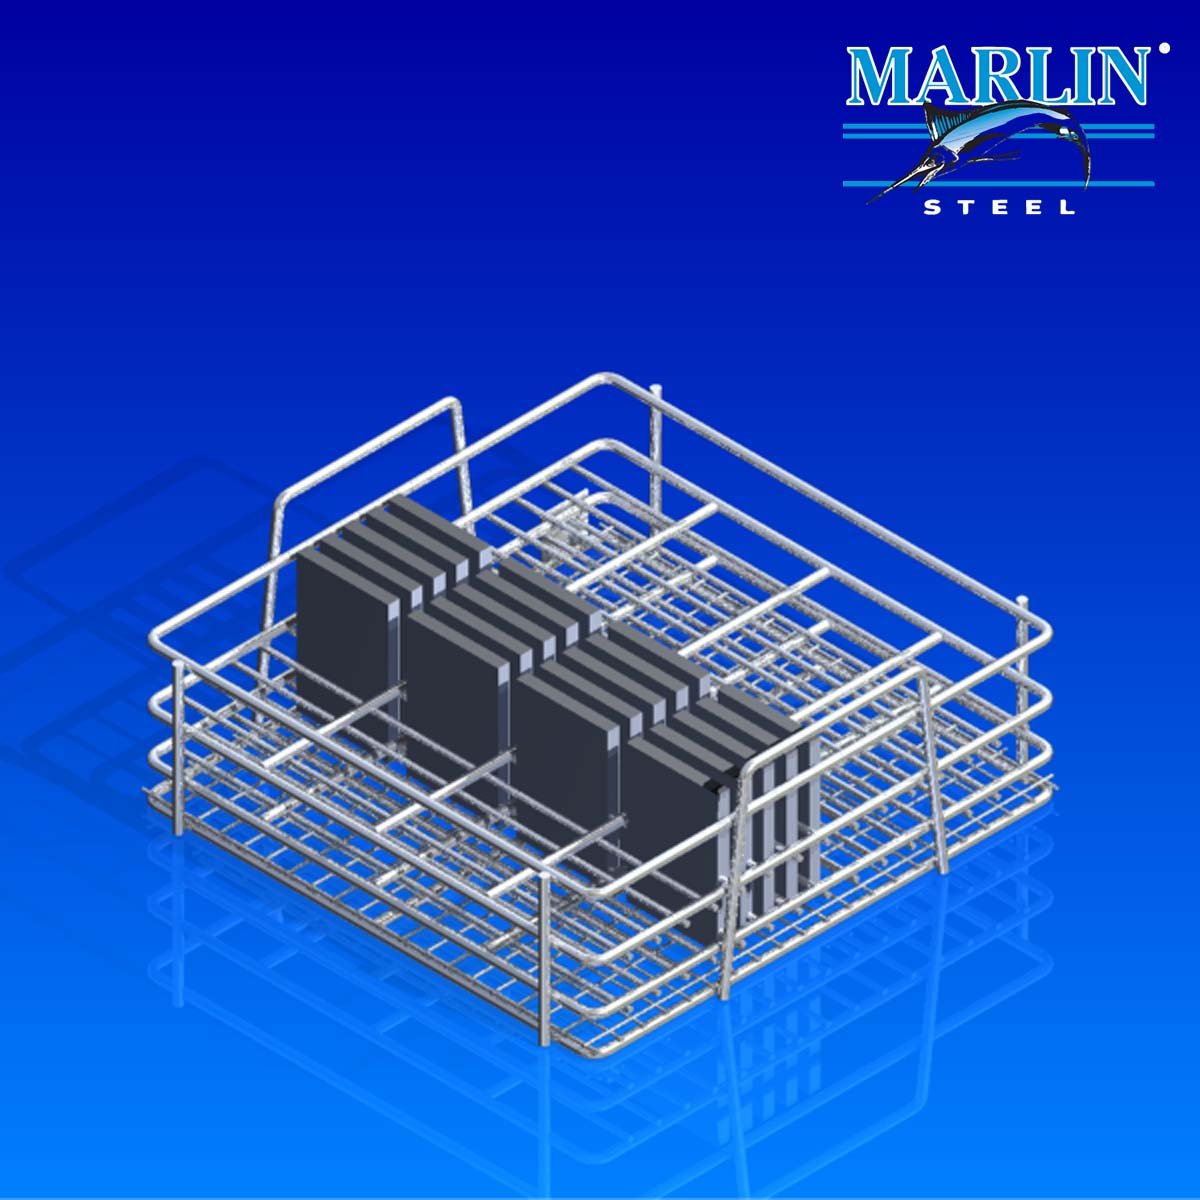 Marlin Steel Material Handling Basket with Handles 876001